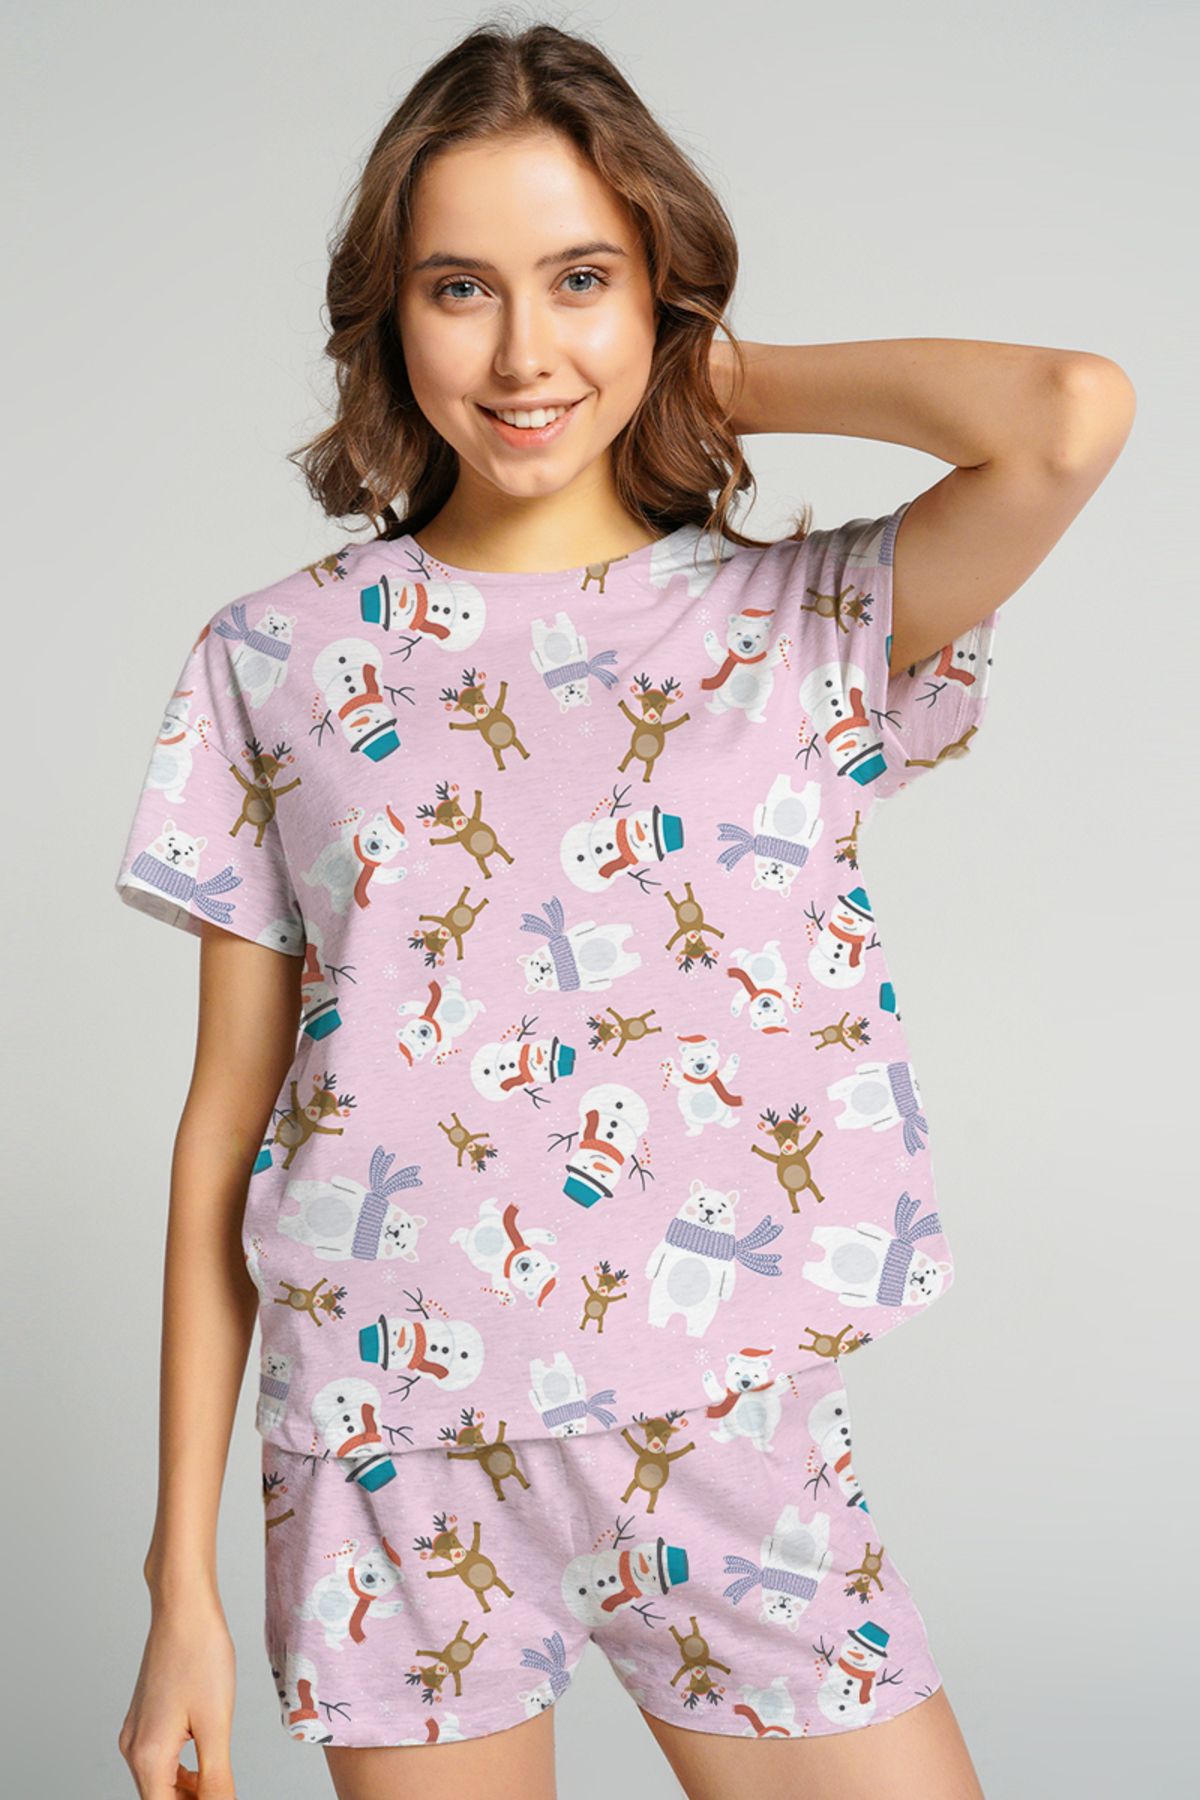 pistore Pembe Yılbaşı Temalı Baskılı Pijama Takımı T-shirt ve Şort Takım